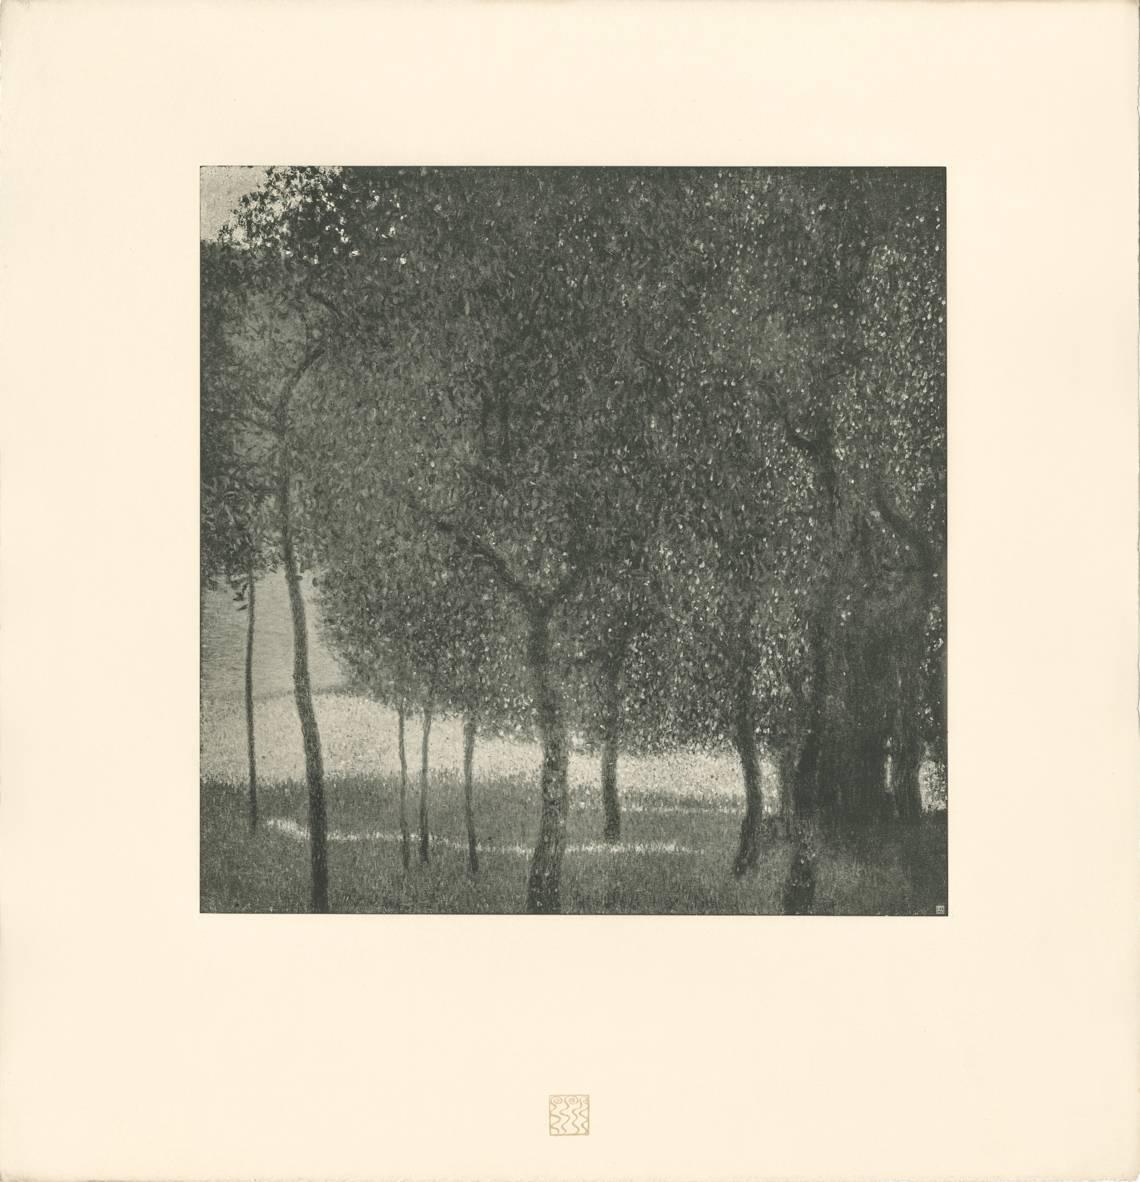 Gustav Klimt & K.K. Hof-und Staatsdruckerei Landscape Print - H.O. Miethke Das Werk folio "Fruit Trees" collotype print